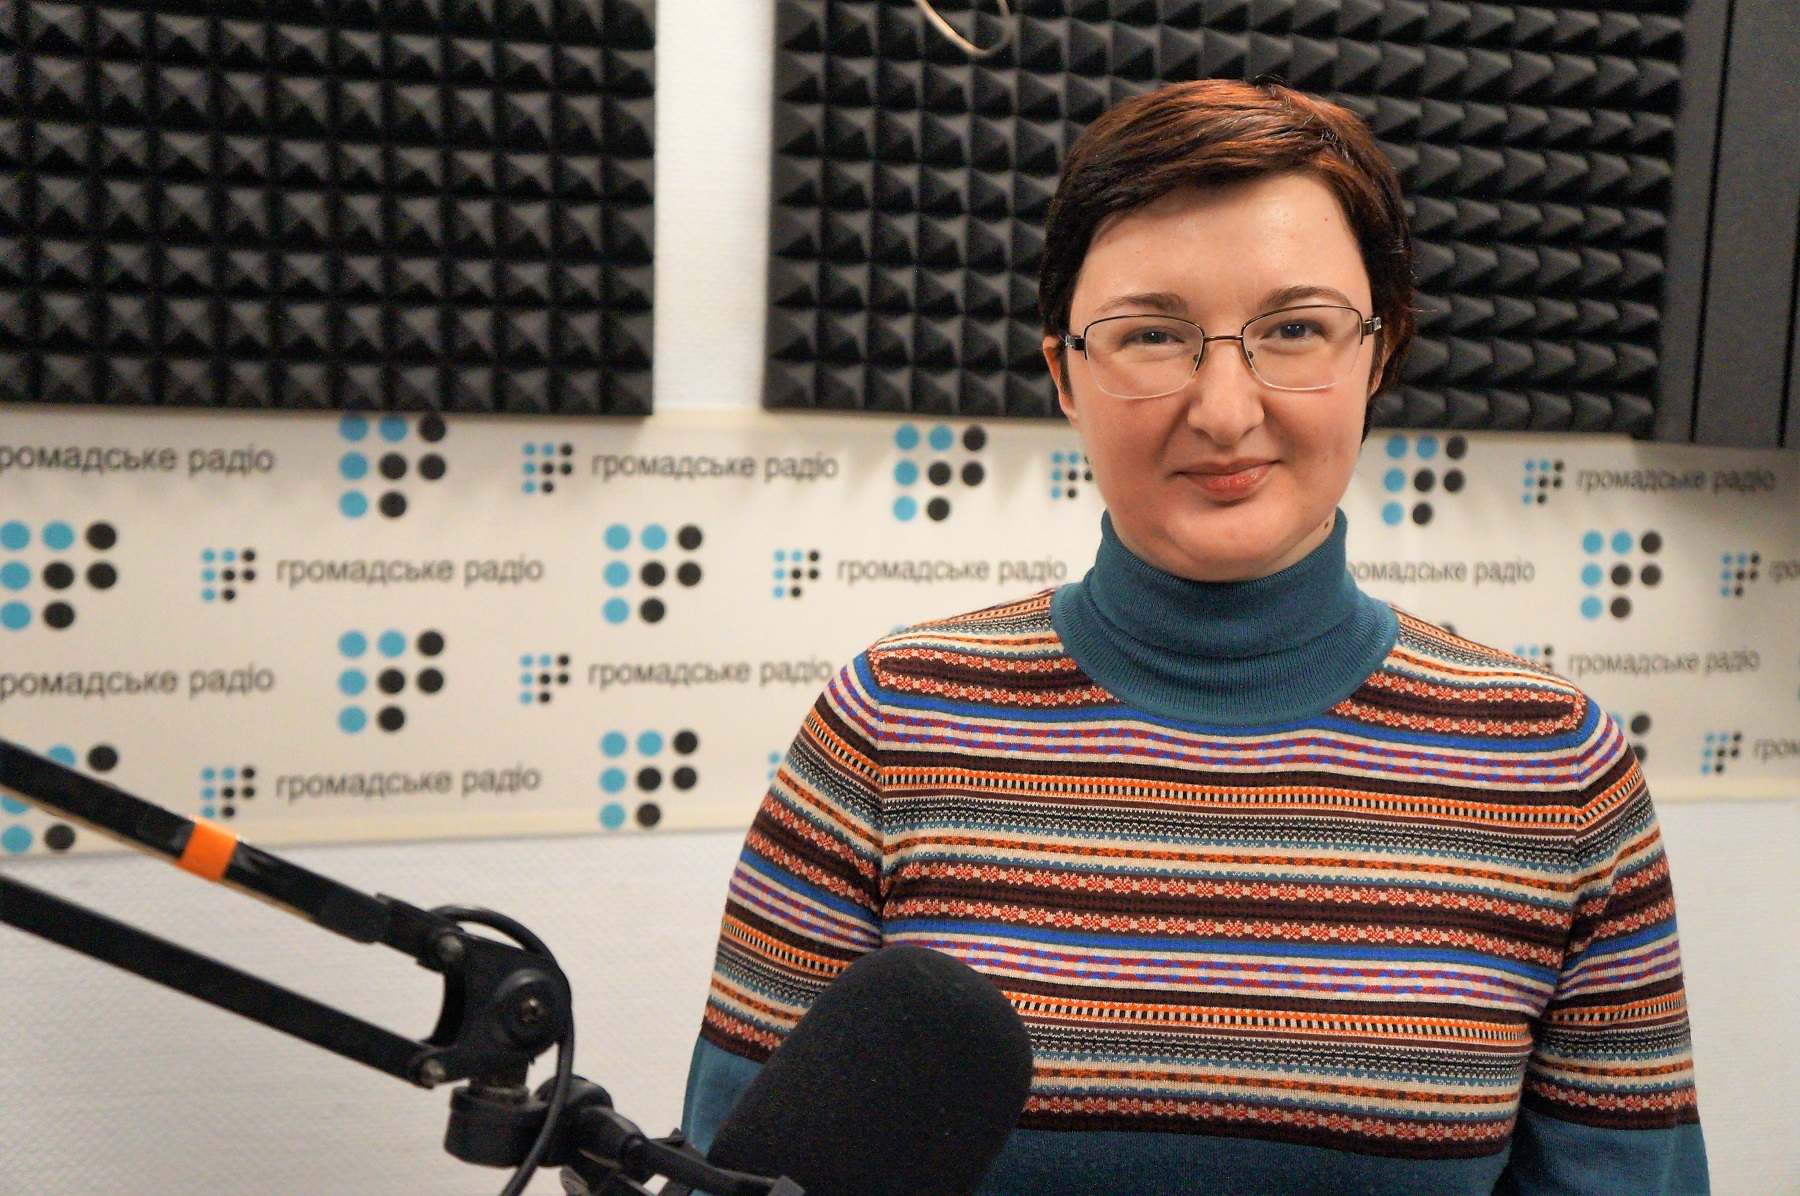 Треба займатися організаторами та вбивцями, а не людьми, які кидали каміння, - Герасимова про справу 2 травня